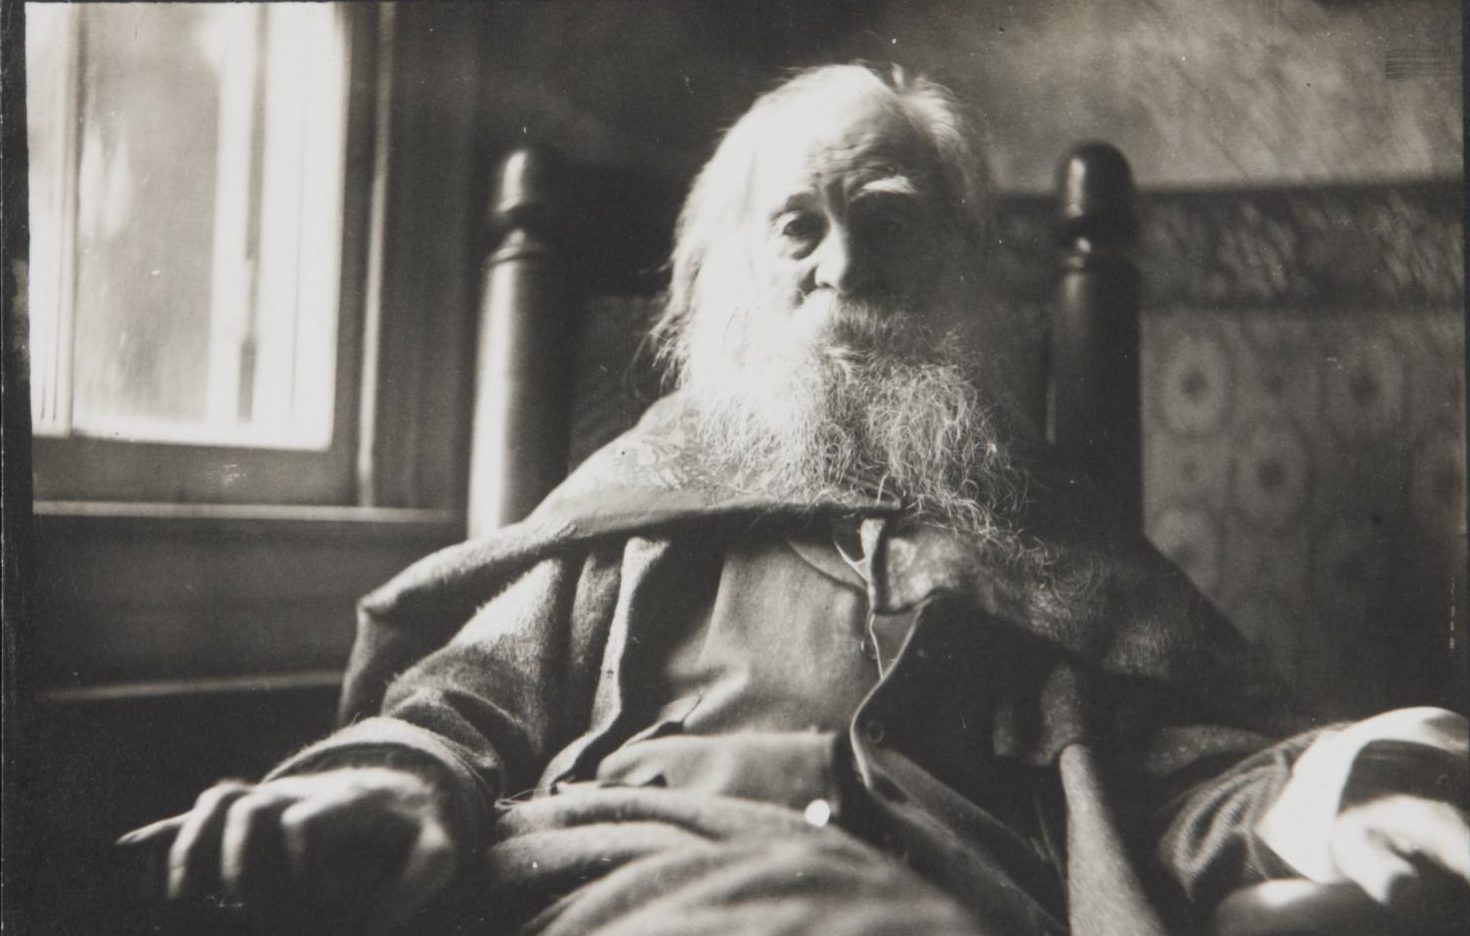 Al funerale di Walt Whitman (che quest’anno fa 200 anni) c’erano politici, vecchi soldati, pescatori d’ostriche e amanti (di entrambi i sessi), si fece baldoria, rissa e poesia. Il mirabile racconto di Apollinaire